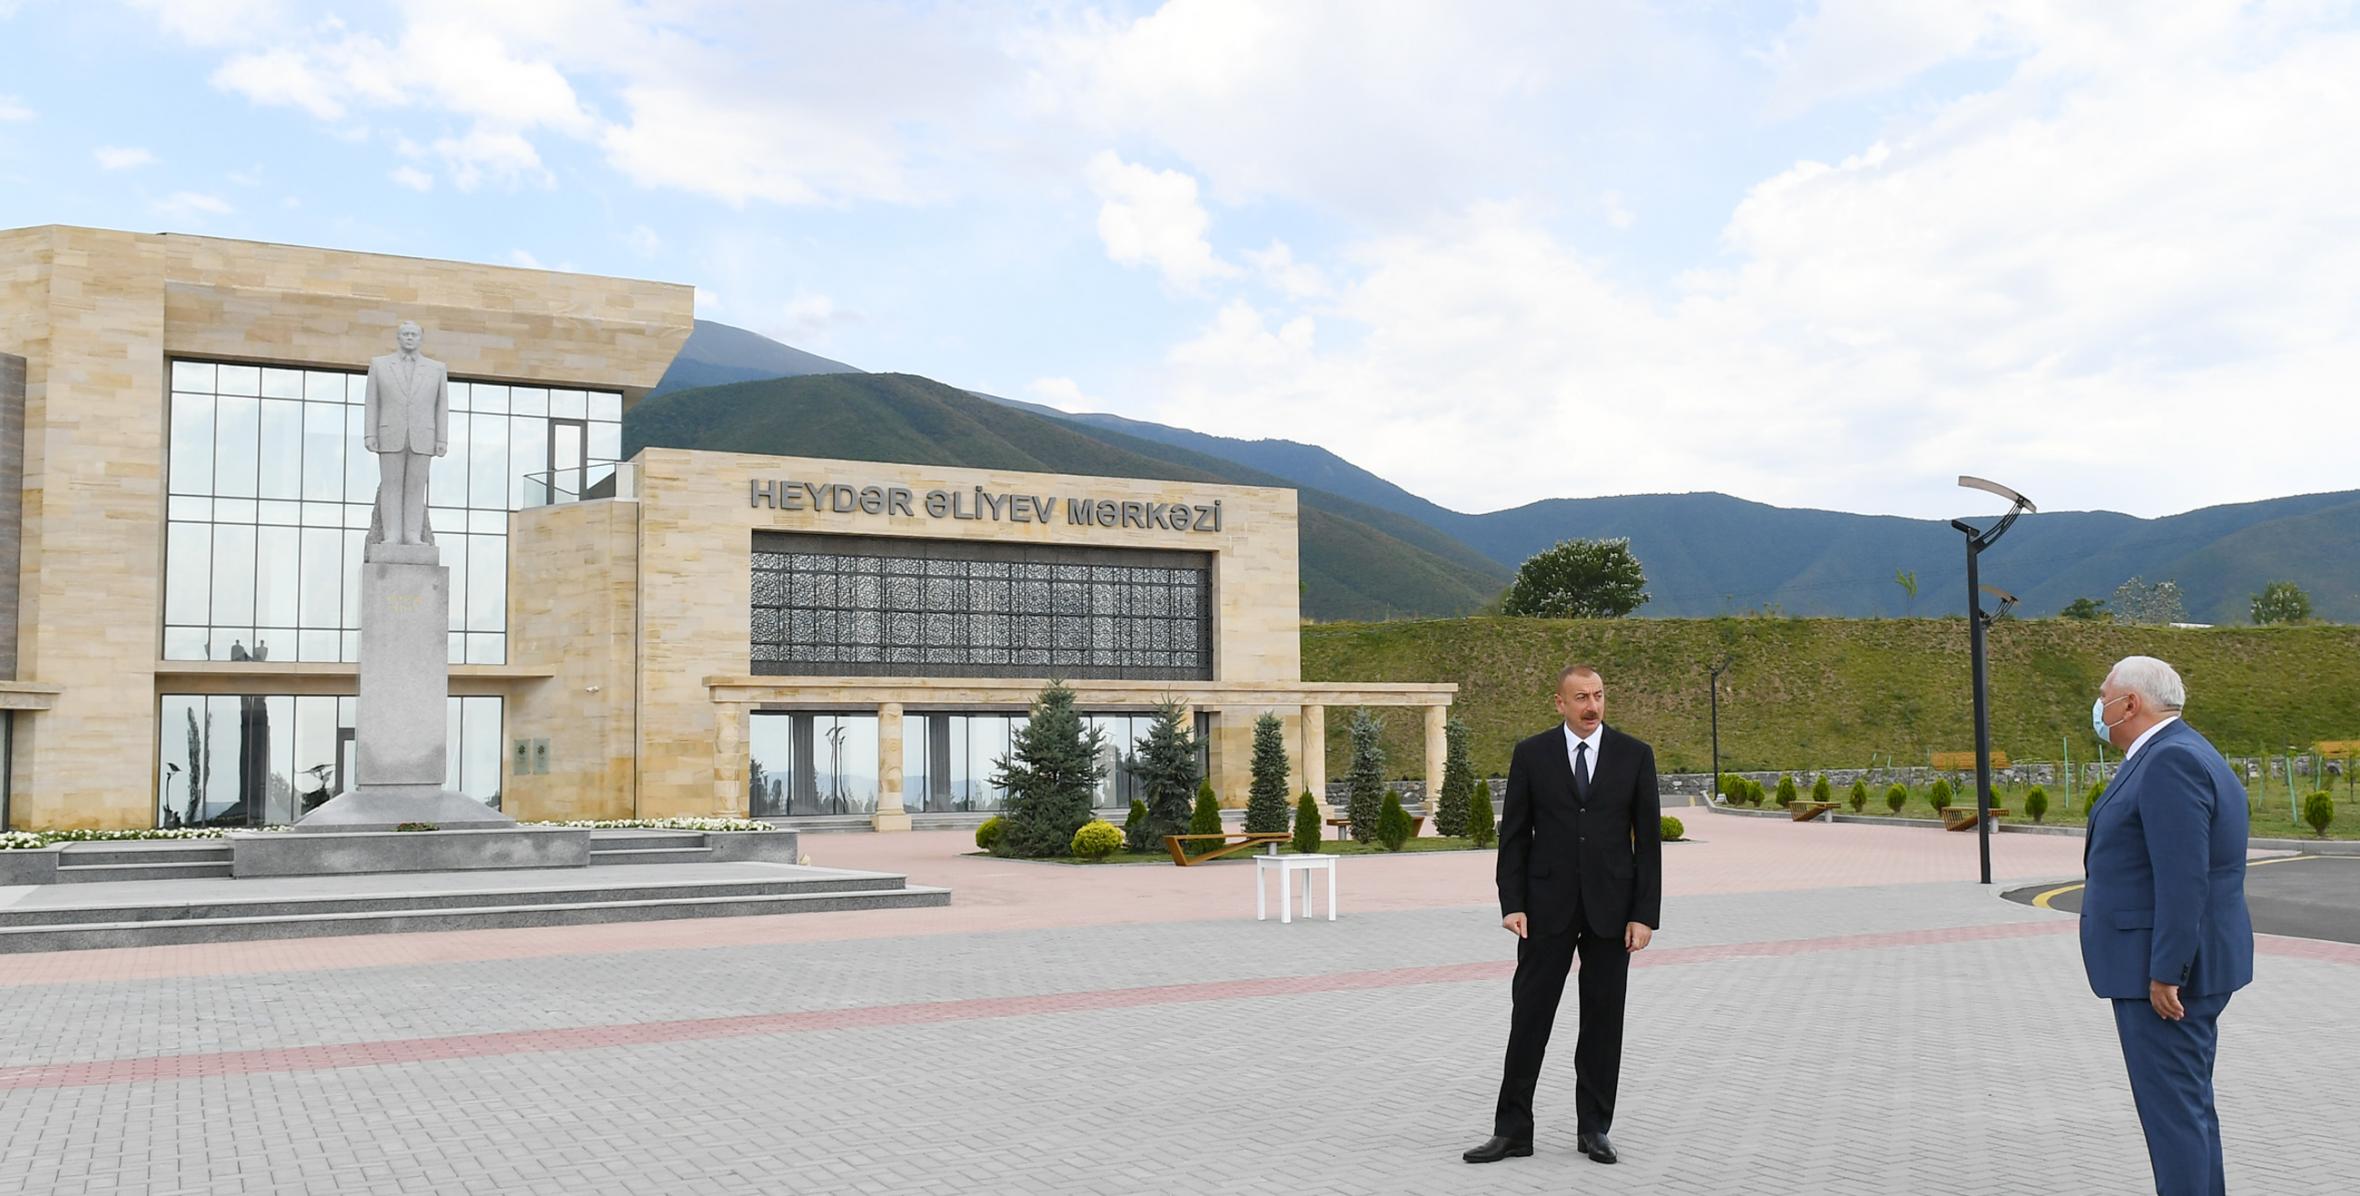 Ilham Aliyev arrived in Shaki